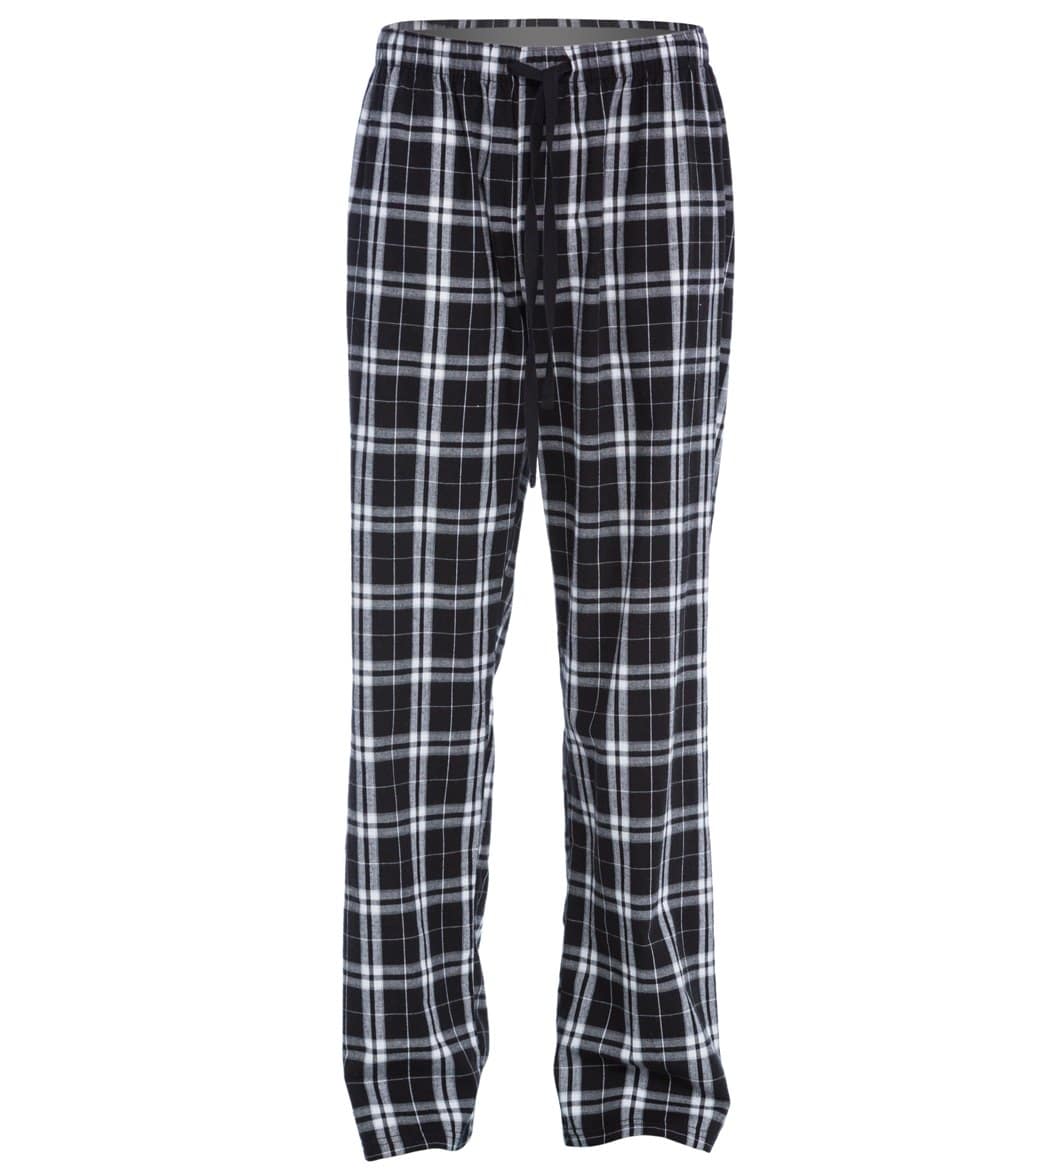 Women's Flannel Plaid Pants - Black Medium Cotton - Swimoutlet.com